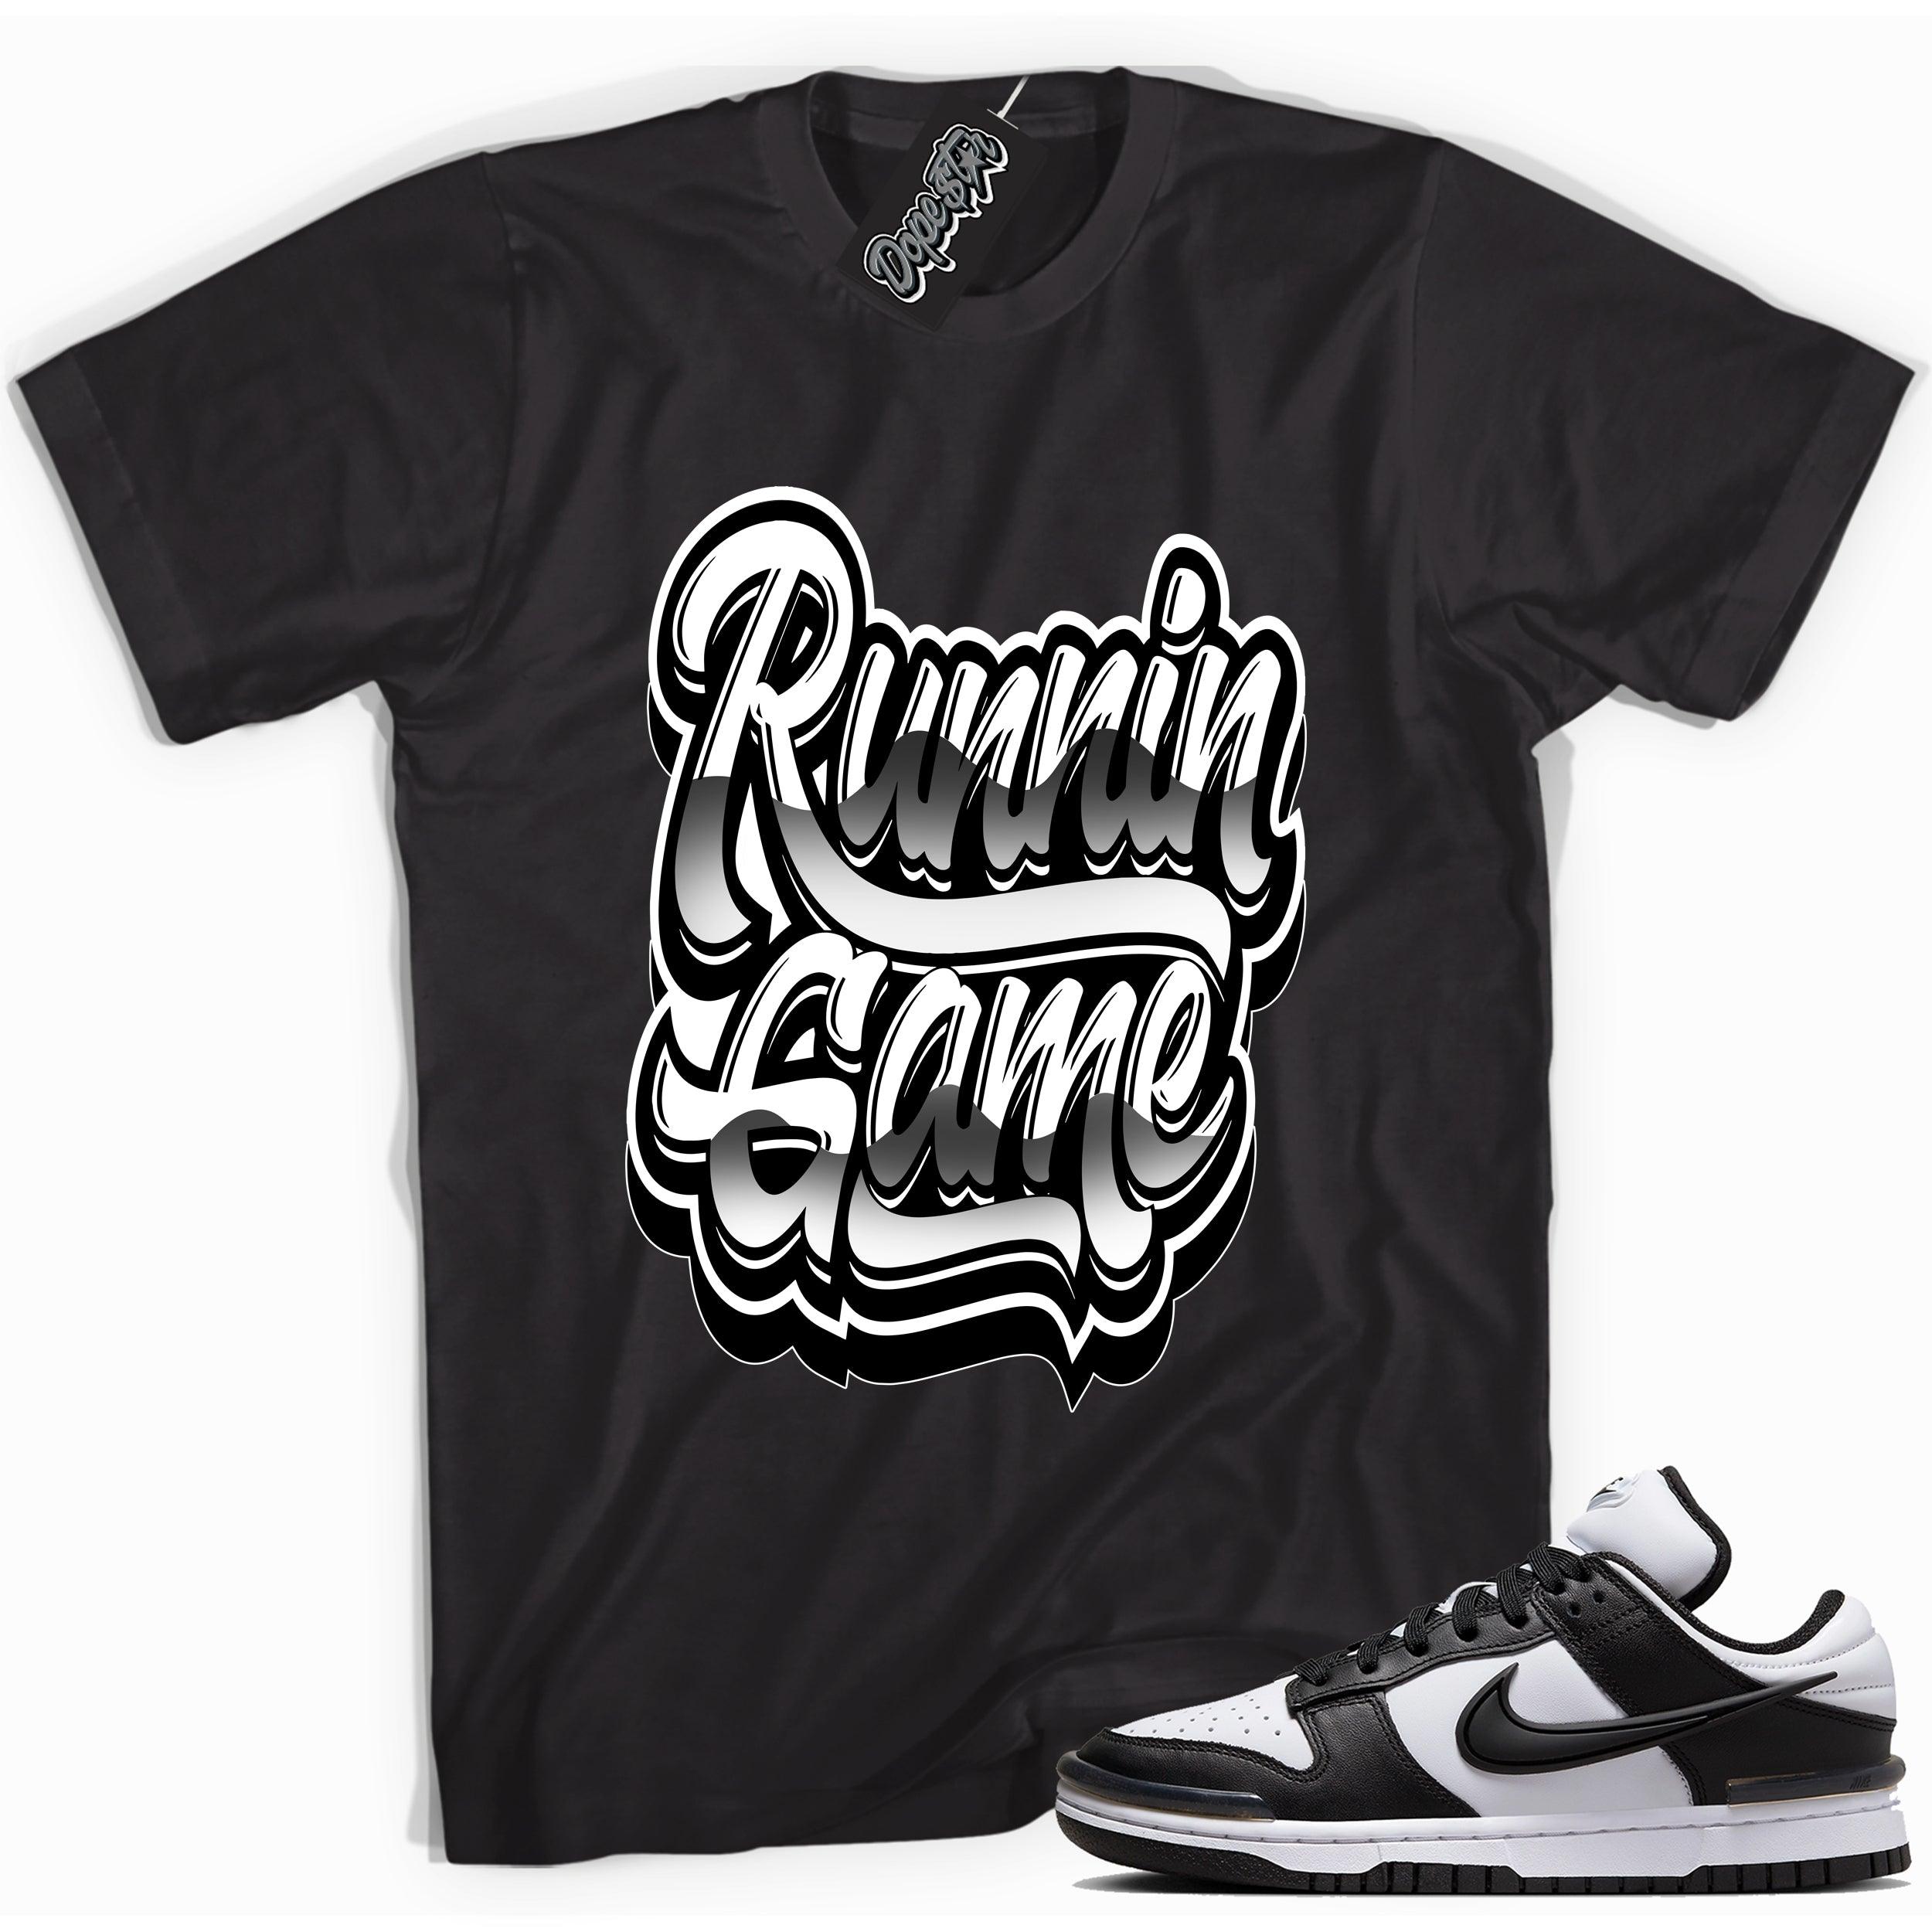 Nike Dunk Low Twist Panda - Running Game - Sneaker Shirts Outlet